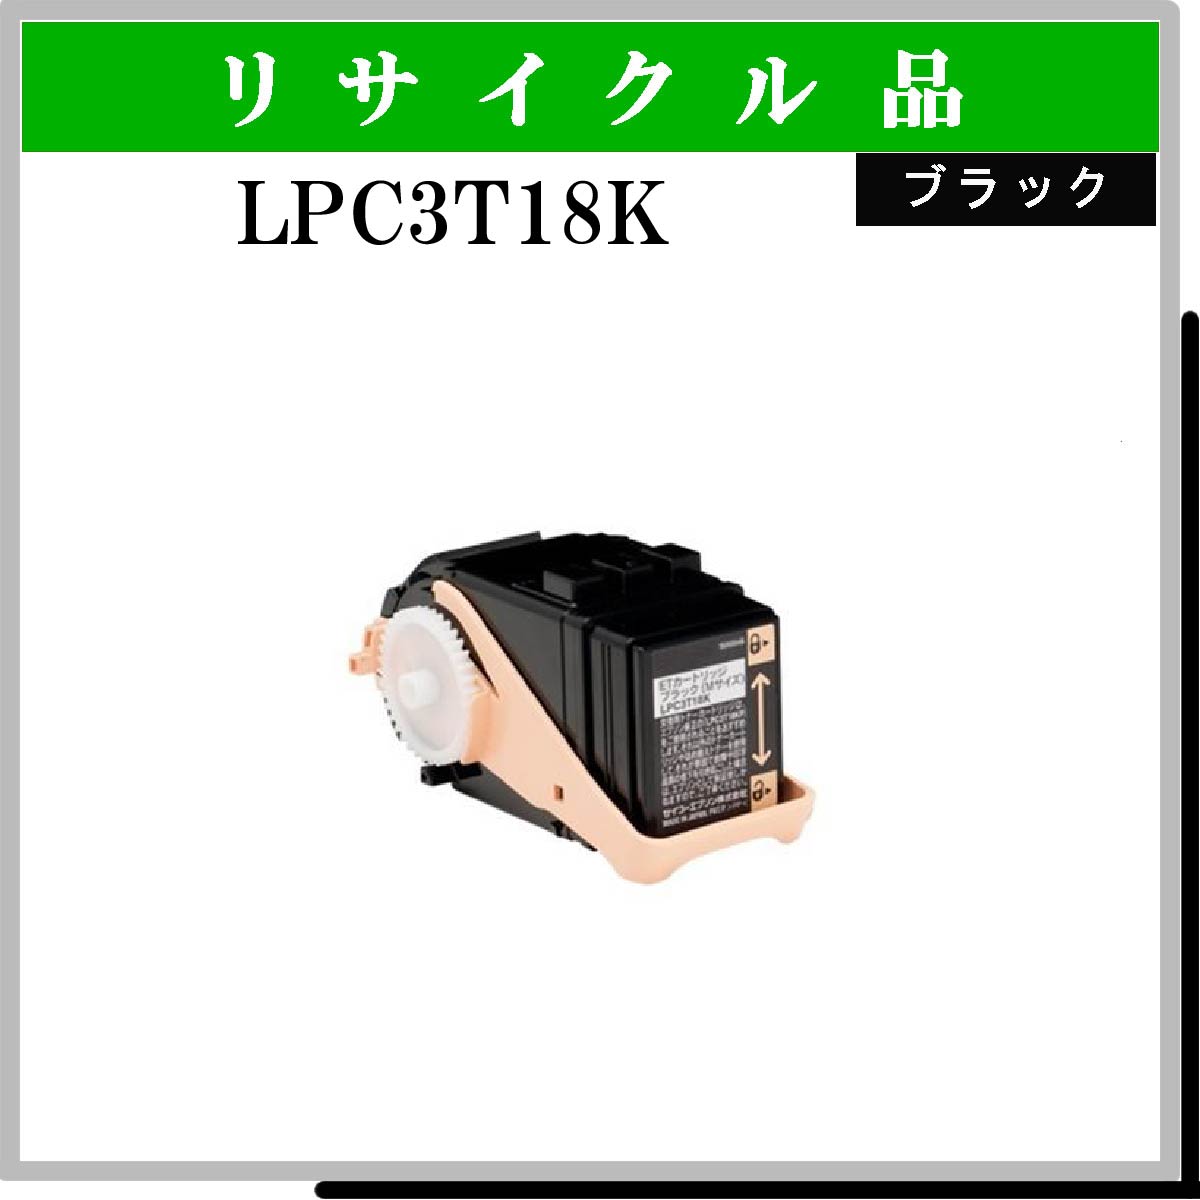 LPC3T18K - ウインドウを閉じる